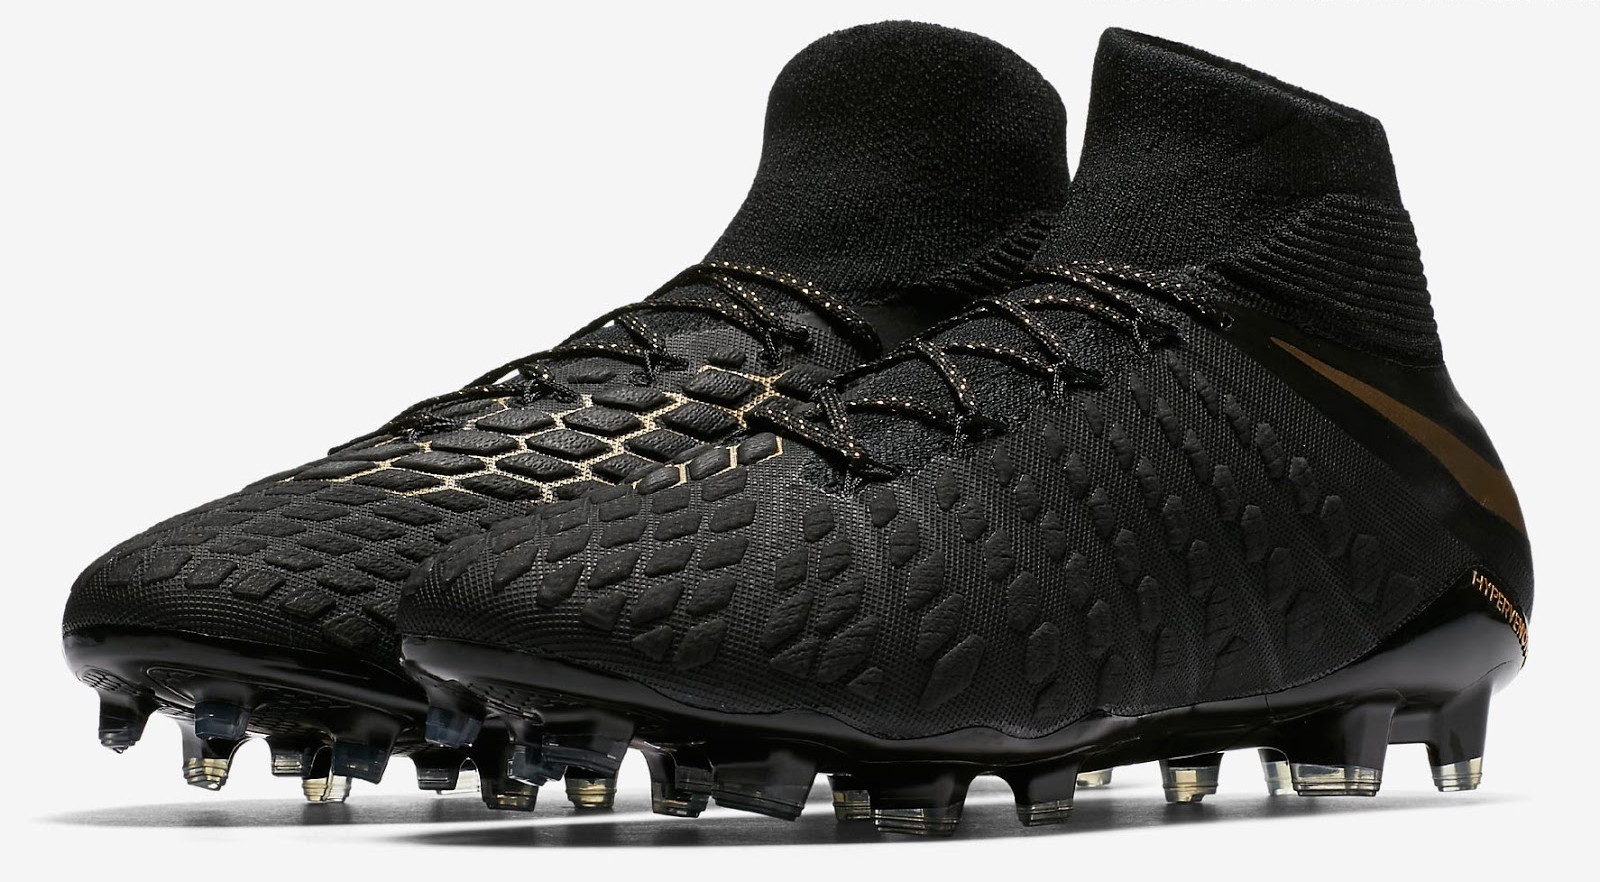 Wissen olie echo Nike lanceert zwart gouden Nike Hypervenom Phantom 3 voetbalschoenen -  Voetbal-schoenen.eu